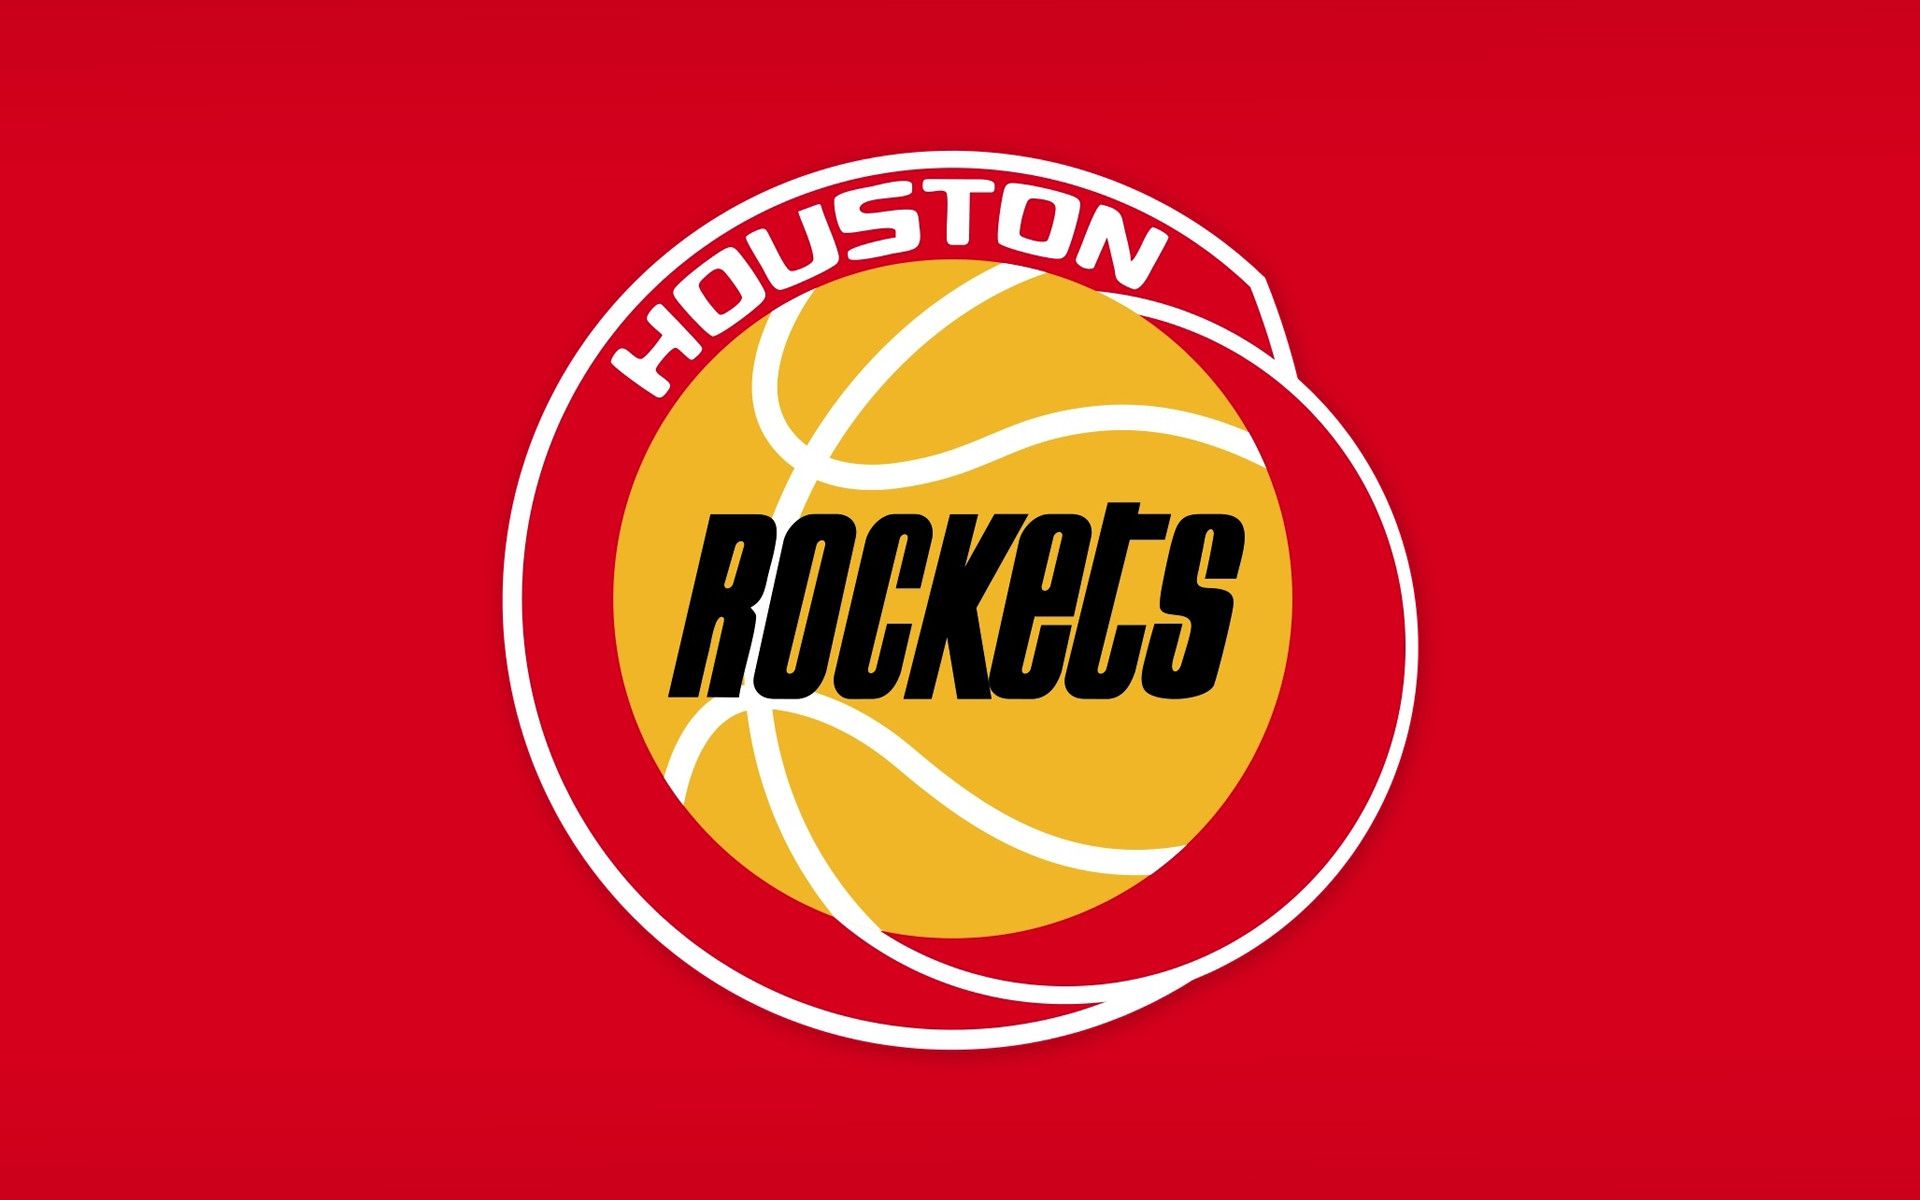 Houston Rockets Wallpaper HD